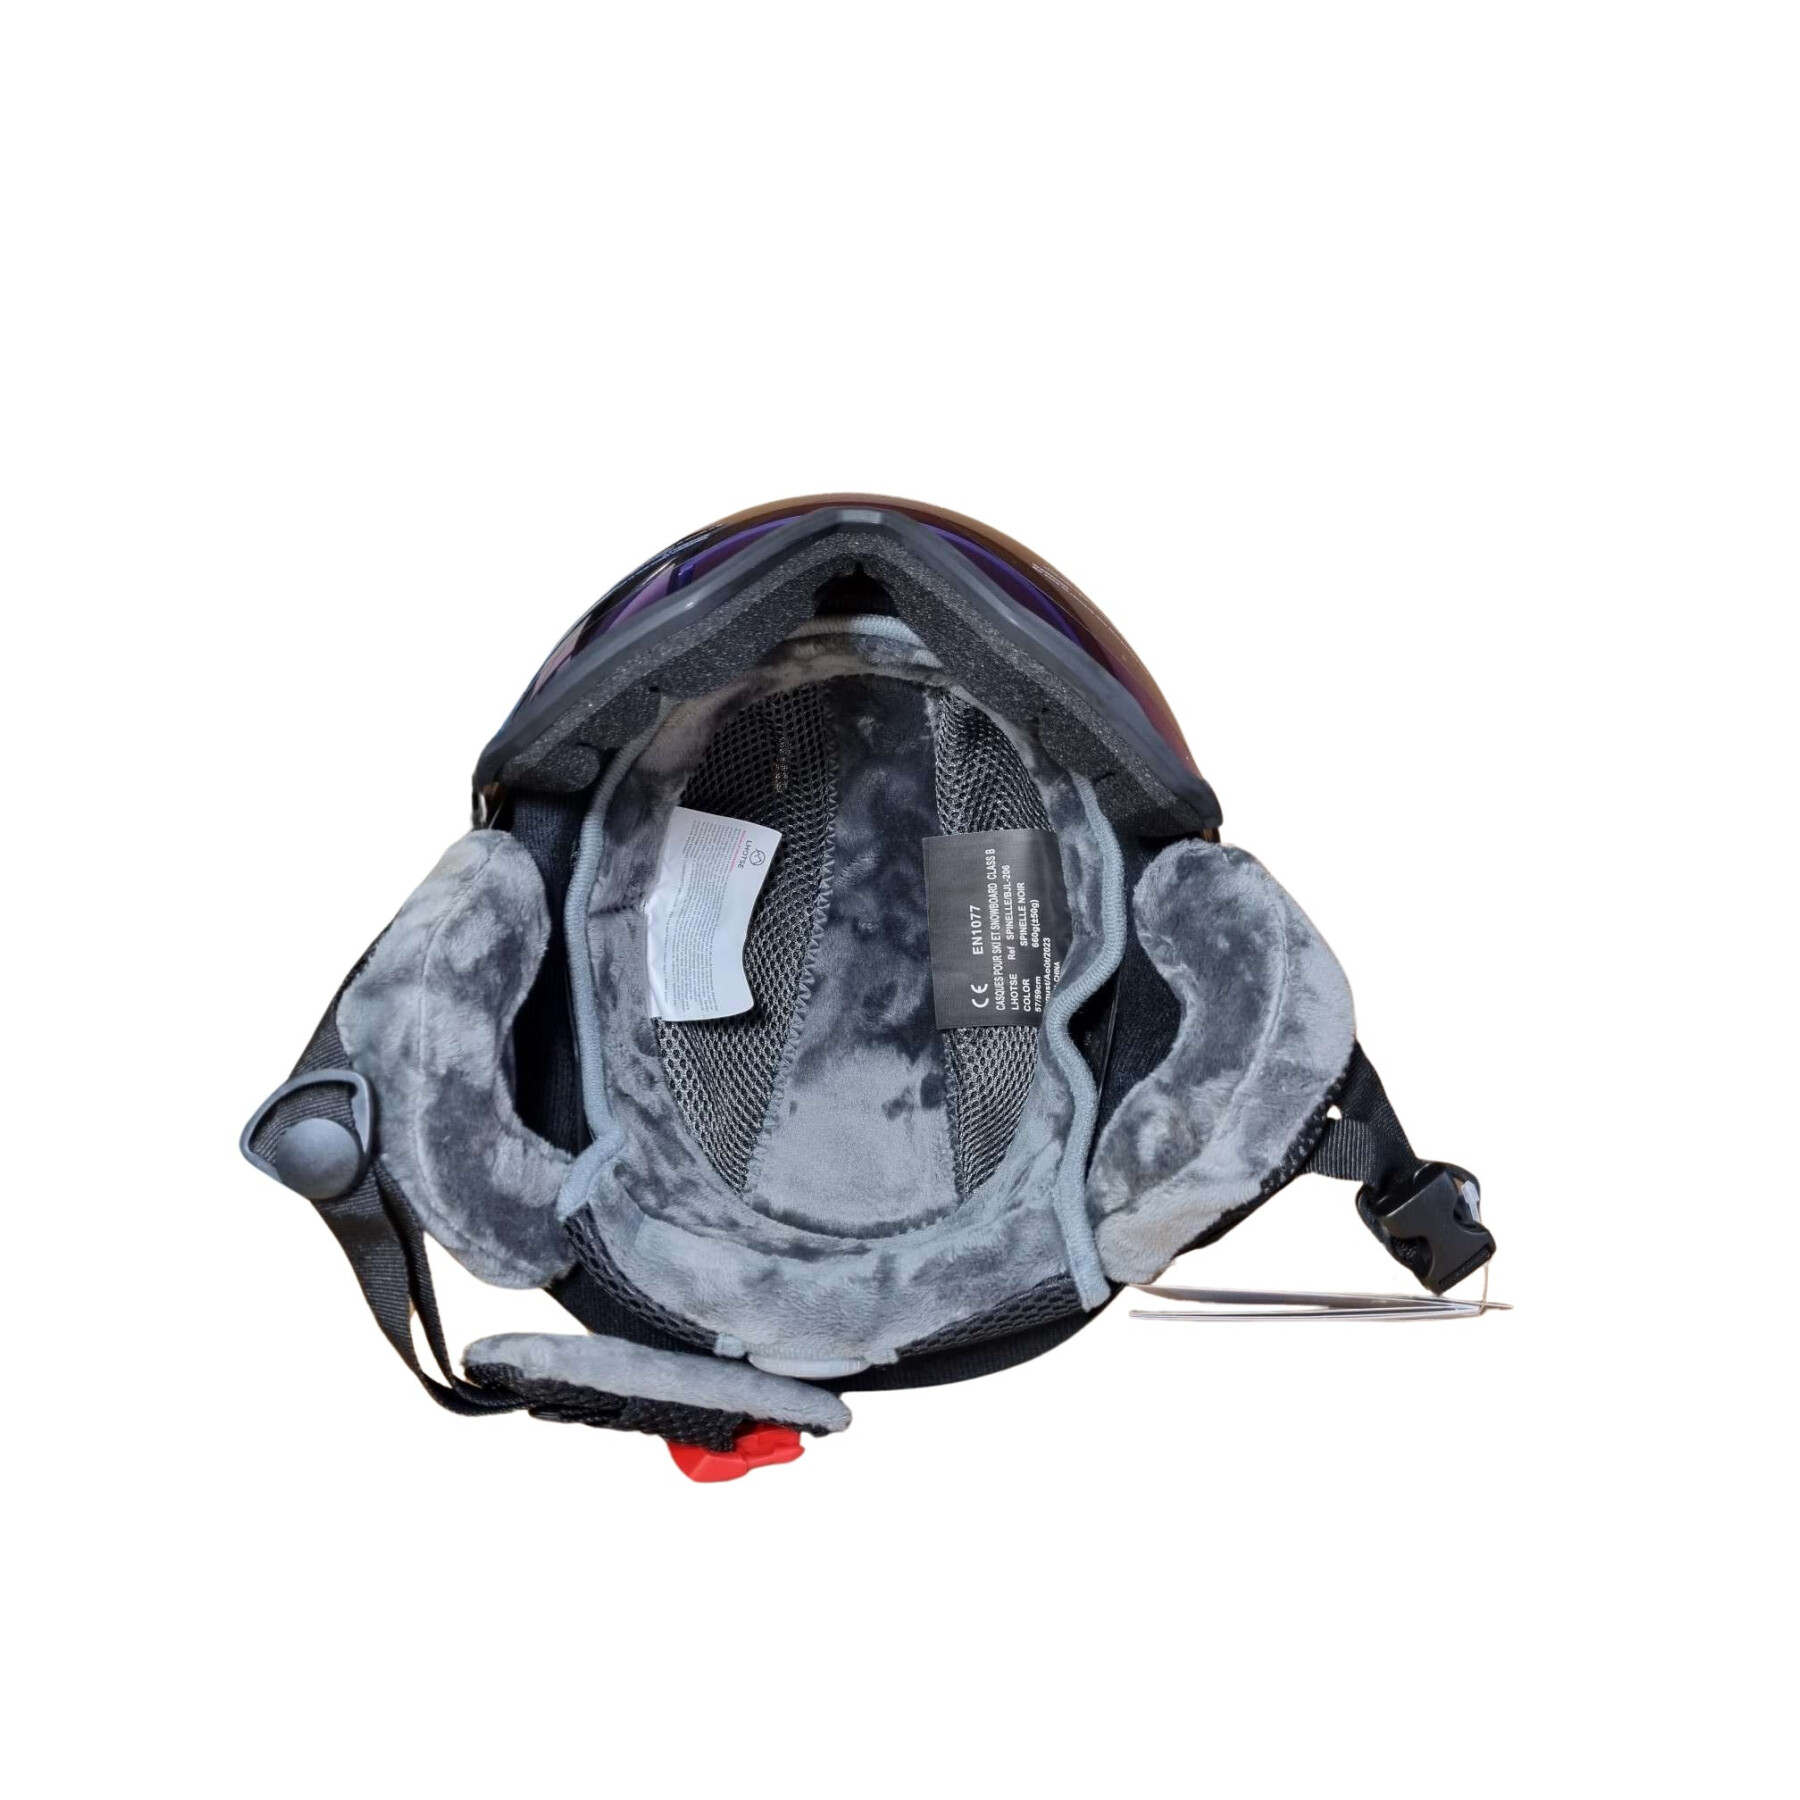 Capacete de esqui Lhotse helmet with visor